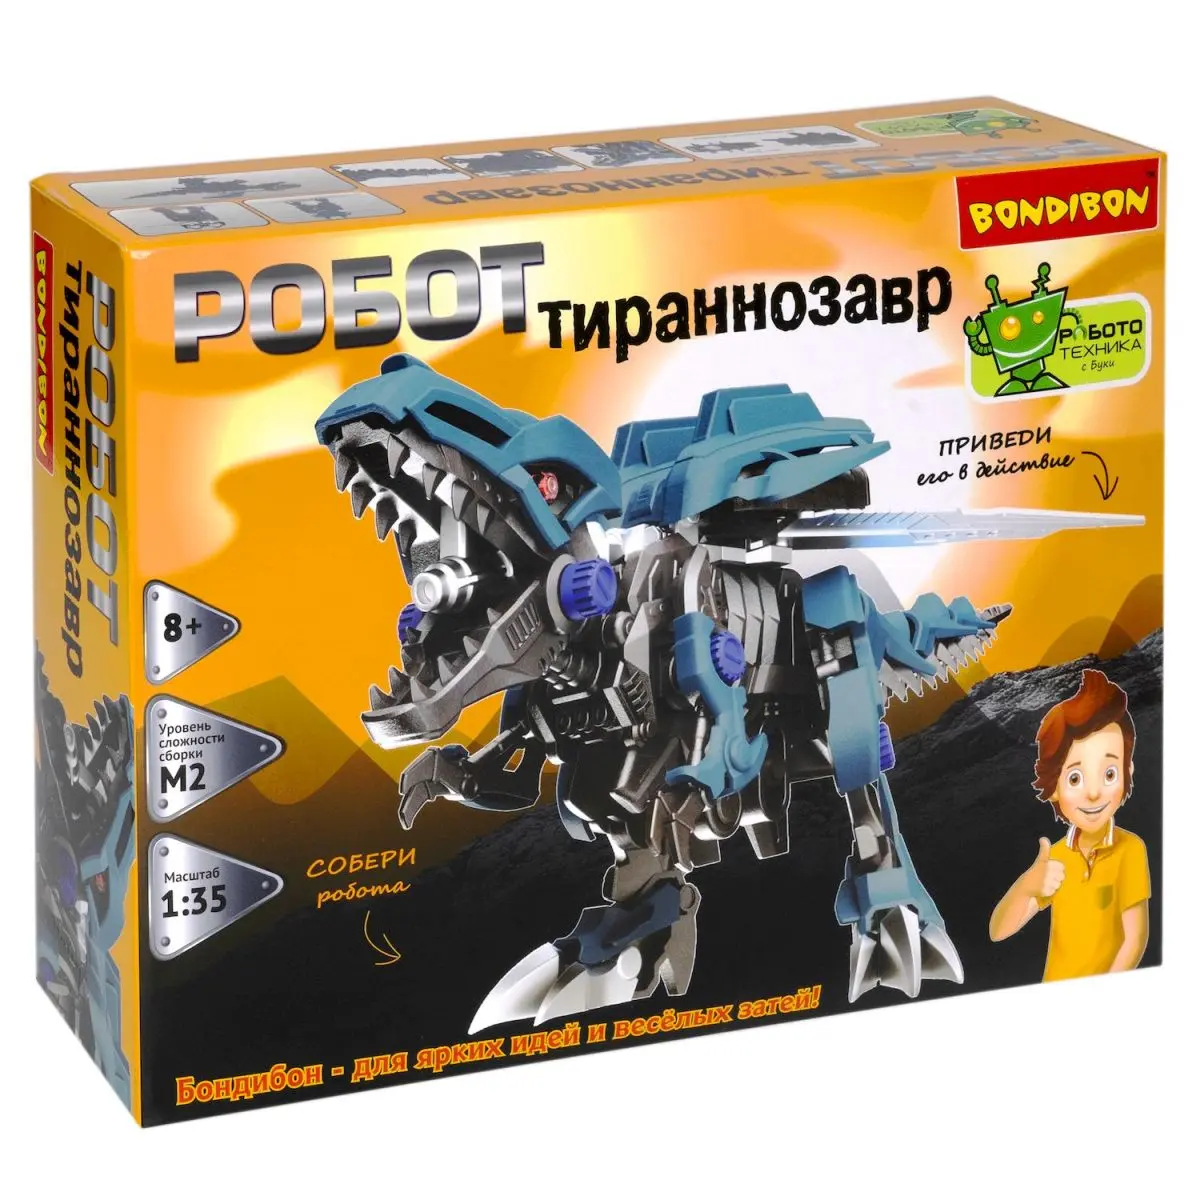 Робототехника. Робот Тираннозавр